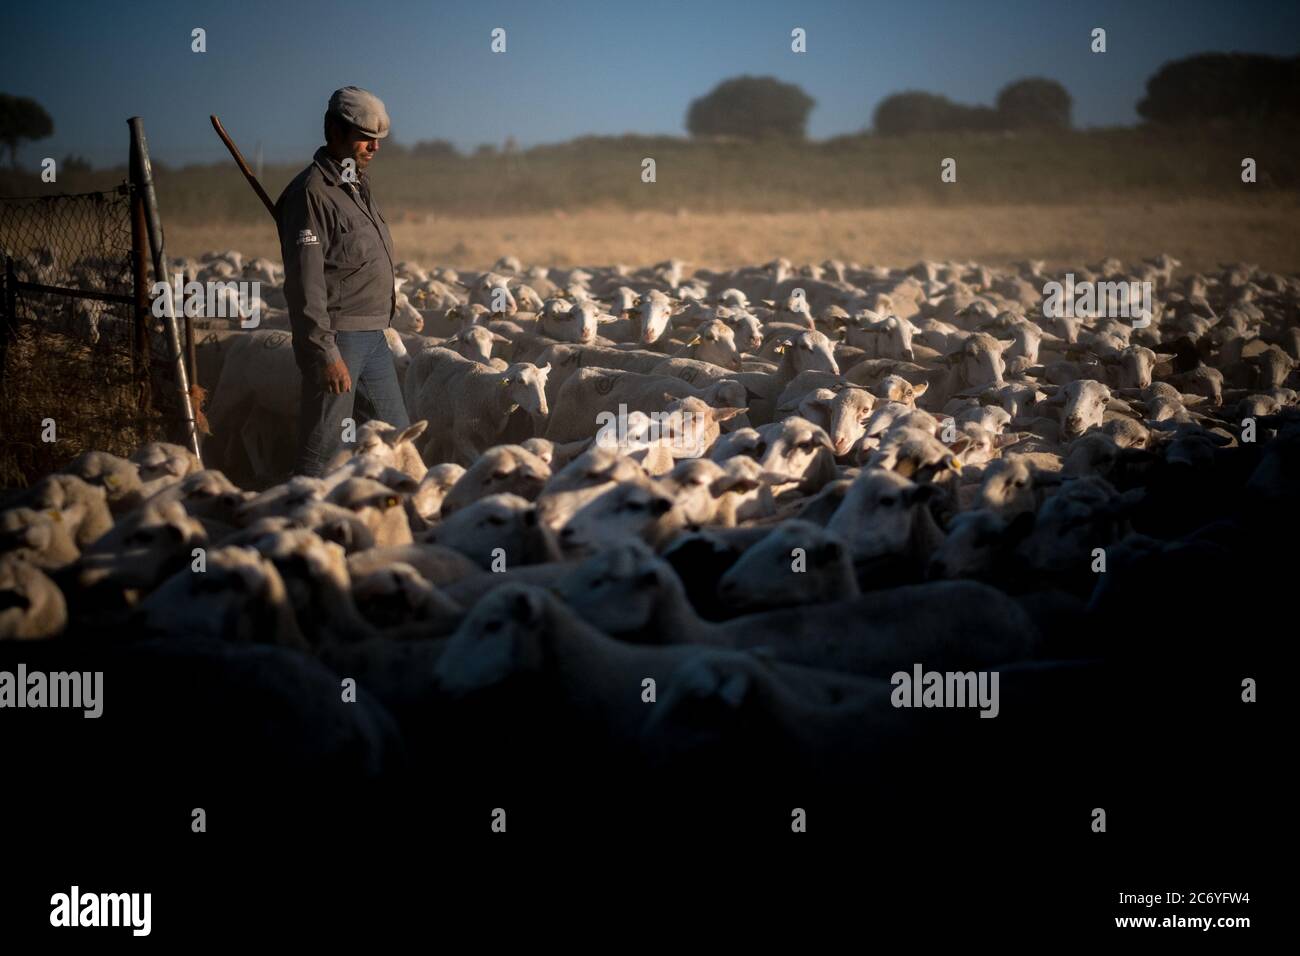 Juan Ahufinger releases die Schafe aus dem geschlossenen fens am nächsten Morgen in der Nacht Camp in der Nähe von Mota de Altarejos, Spanien. Datum: 23-06-2016. Fotograf: Xabier Mikel Laburu. Juan, Ho ist leidenschaftlich über die Spanische brave Vieh, erbte eine Herde von etwa 800 Schafen, als sein Schwiegervater vor einigen Jahren zurückgezogen. Juan ist von deutscher Abstammung, seinen Namen Ahufingher kommt aus, wenn einer seiner Vorfahren kamen in der LED-Minen auf dem XIX Jahrhundert zu arbeiten. Die Region um La Carolina wurden die bedeutende Miner Hersteller von im XIX Jahrhundert geführt und dies brachte viele internationale Unternehmen an i Stockfoto